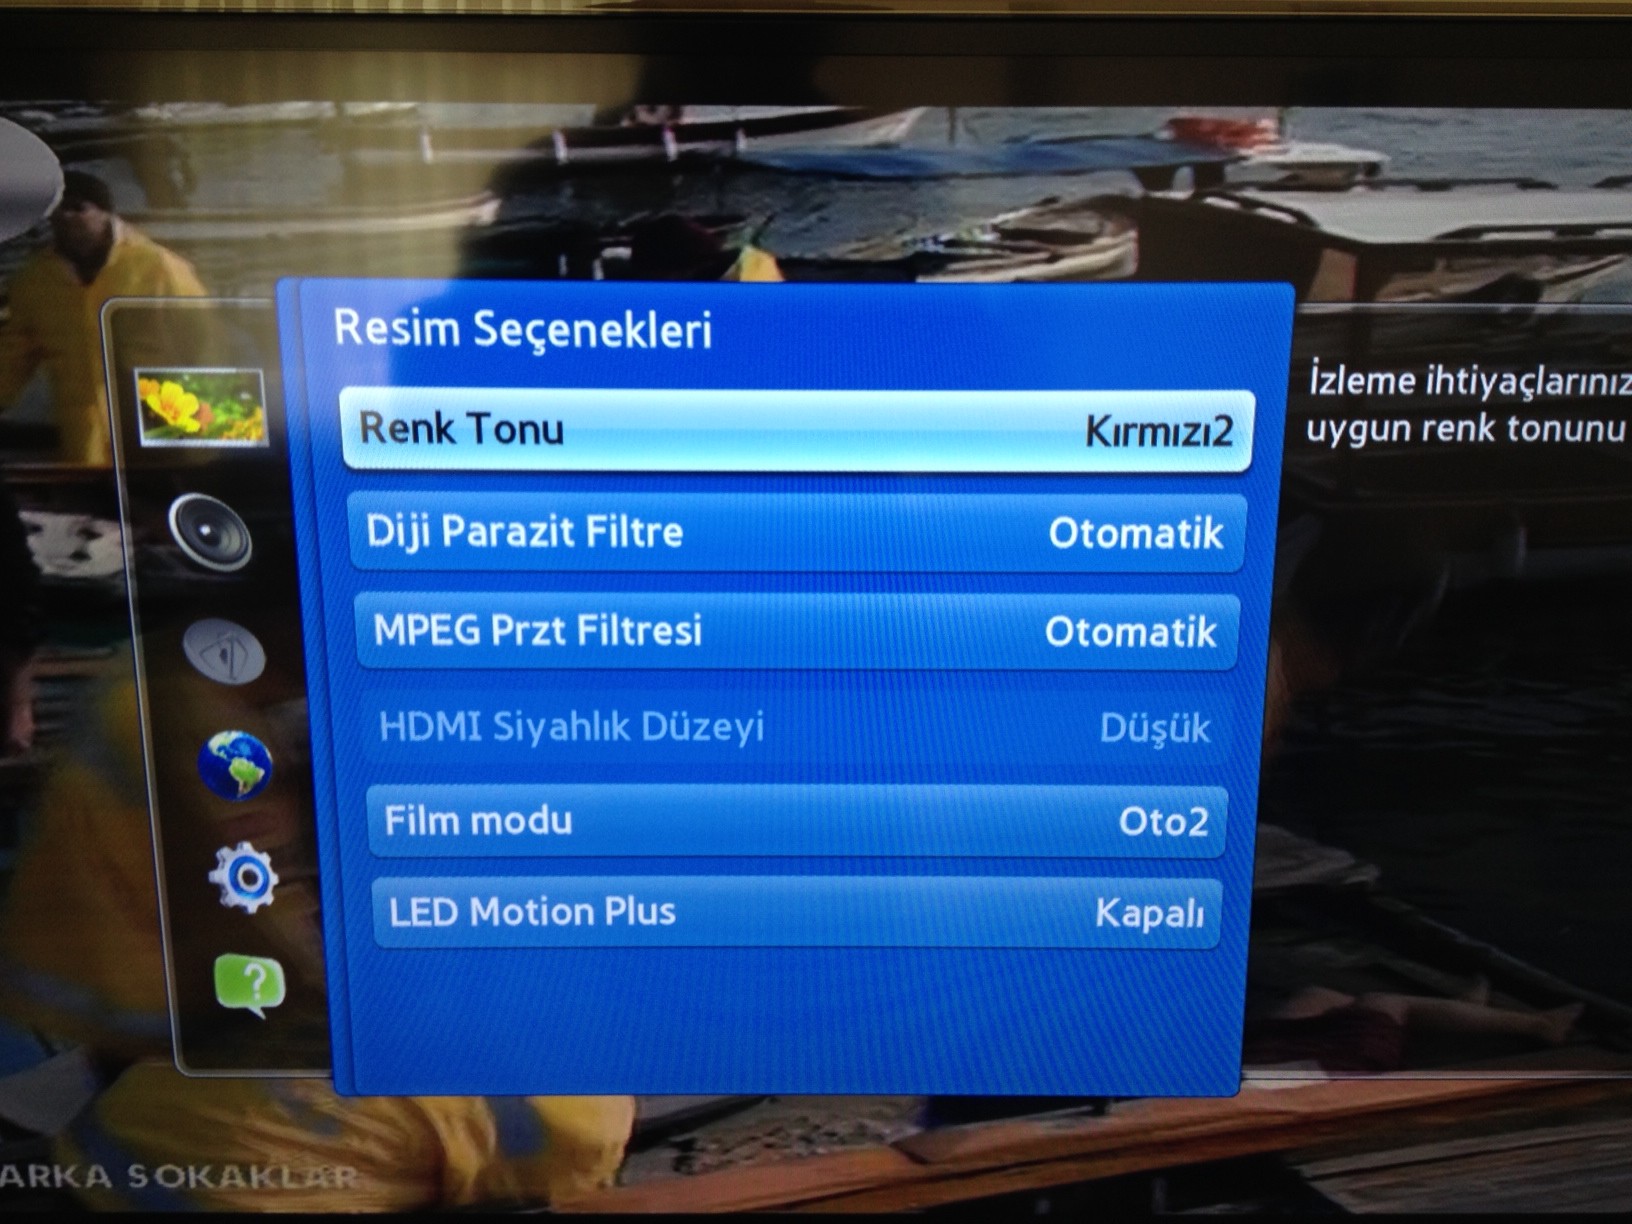  Samsung LED TV, parlaklık sahneye göre değişiyor.